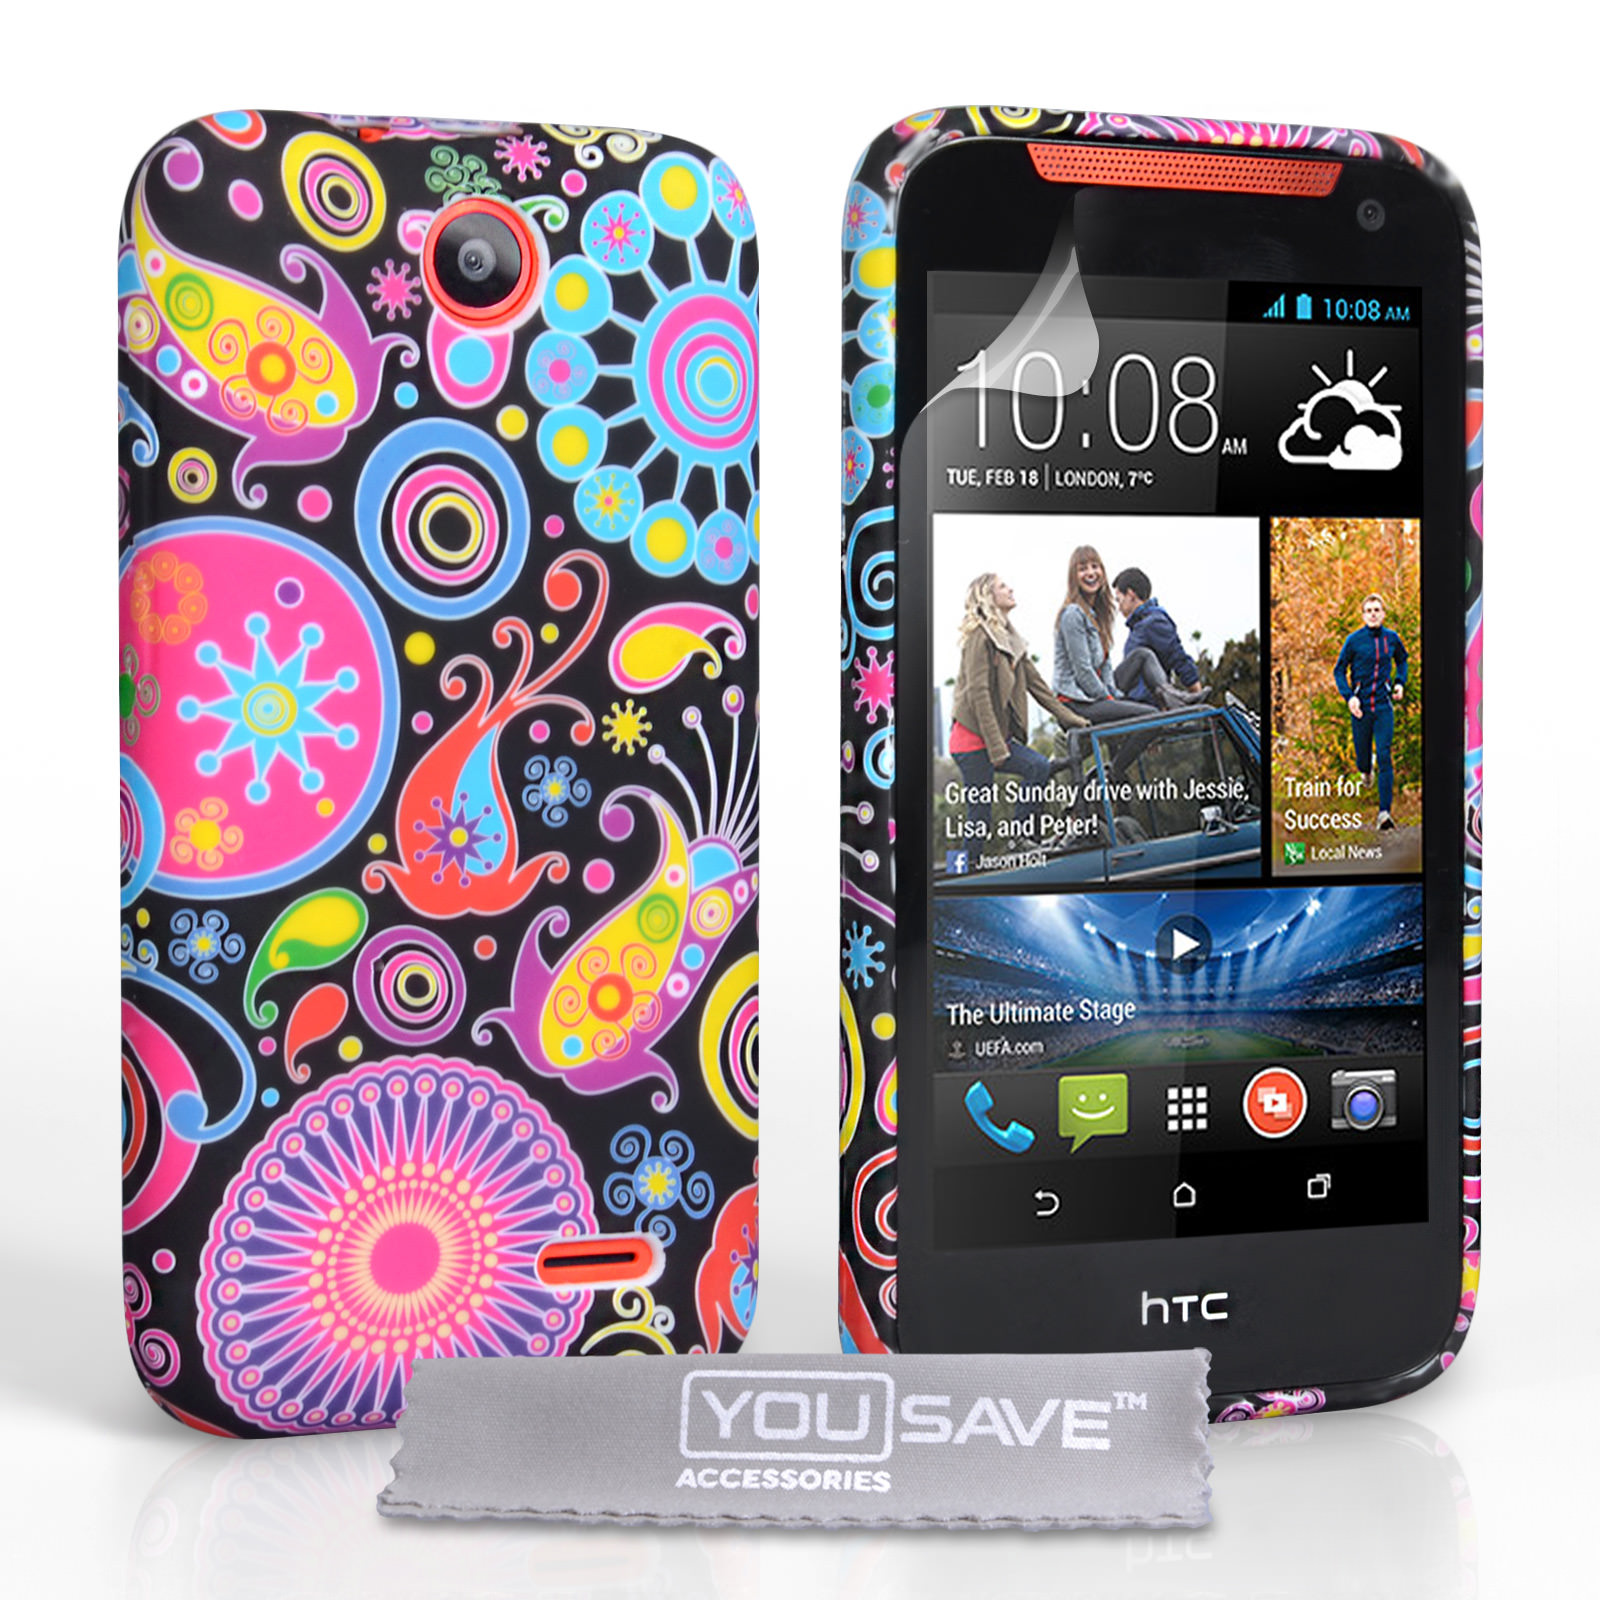 binnenkomst Mount Bank Uitbarsten YouSave Accessories HTC Desire 310 Jellyfish Silicone Gel Case